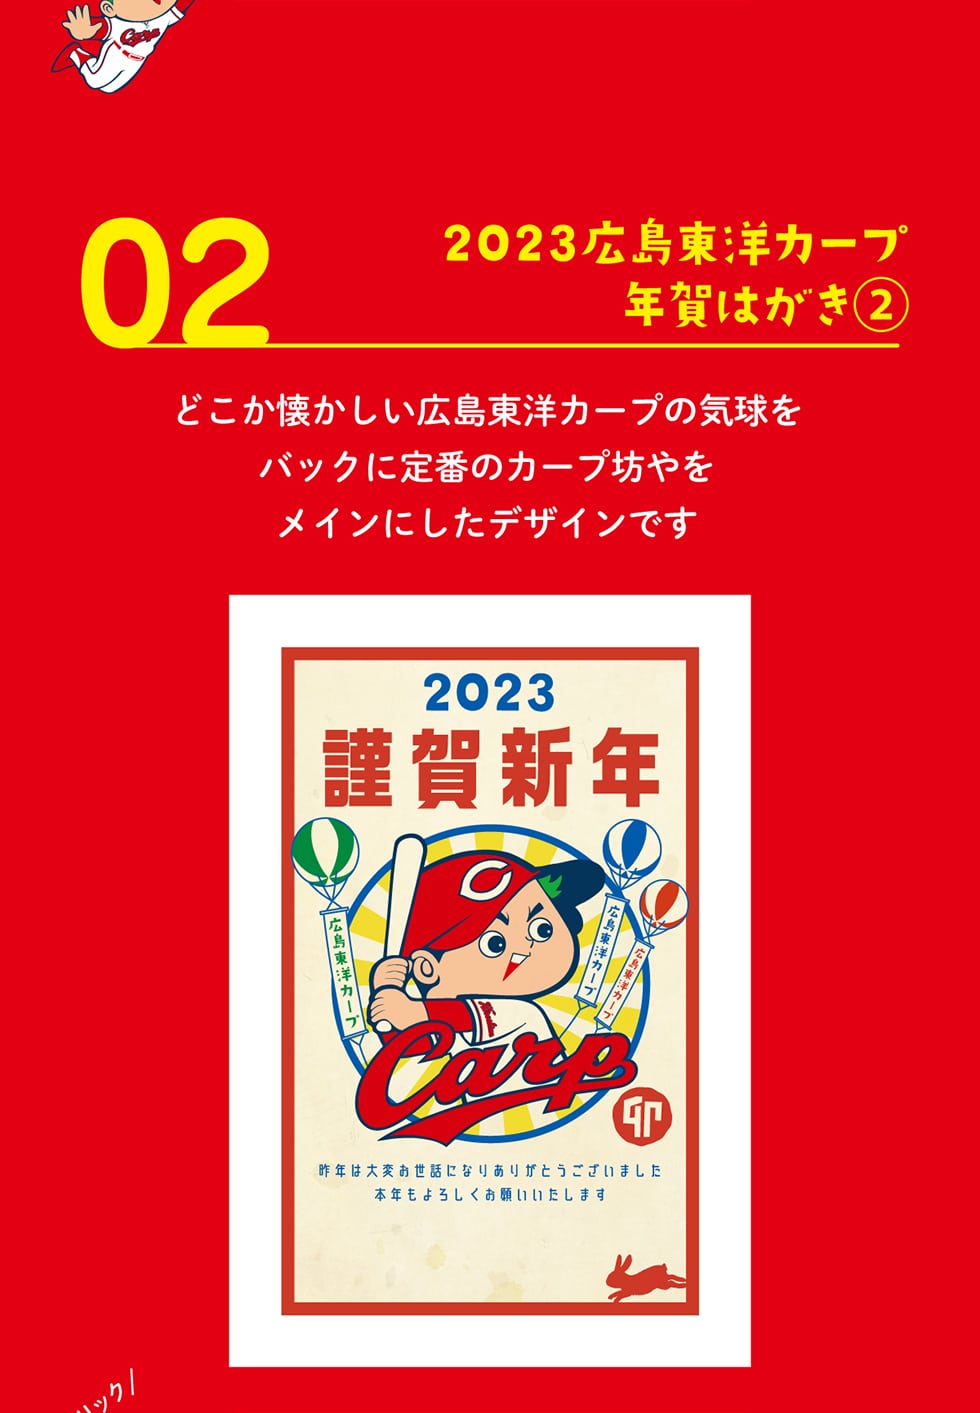 02 2023広島東洋カープ 年賀はがき�A どこか懐かしい広島東洋カープの気球をバックに定番のカープ坊やをメインにしたデザインです